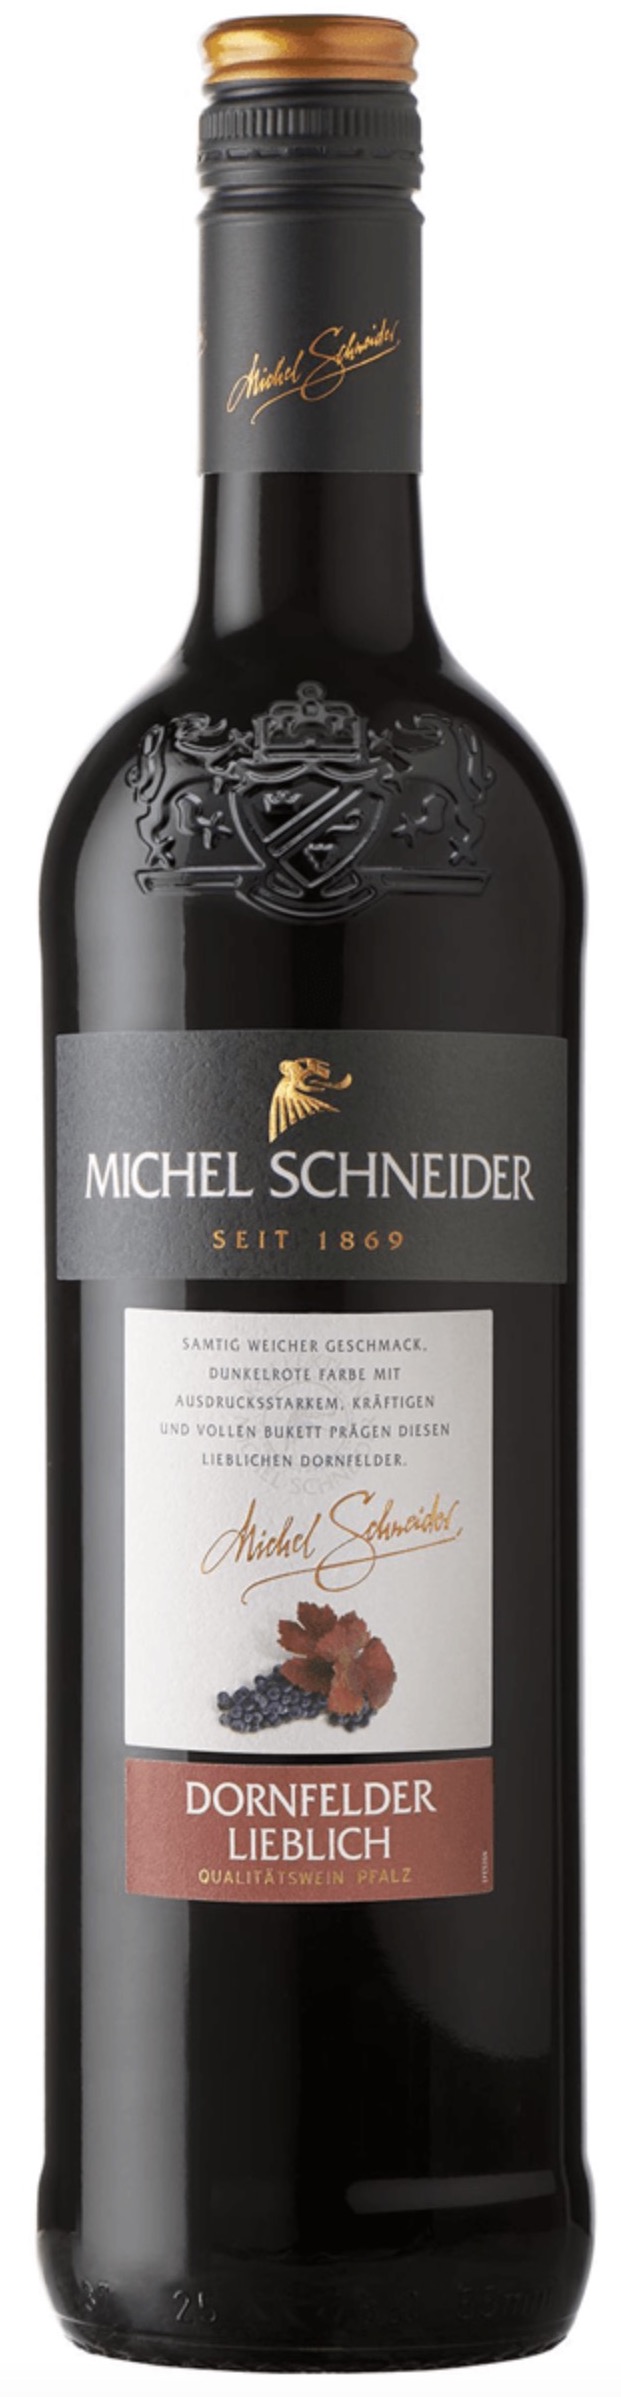 Michel Schneider Dornfelder Pfalz lieblich 11% vol. 0,75L